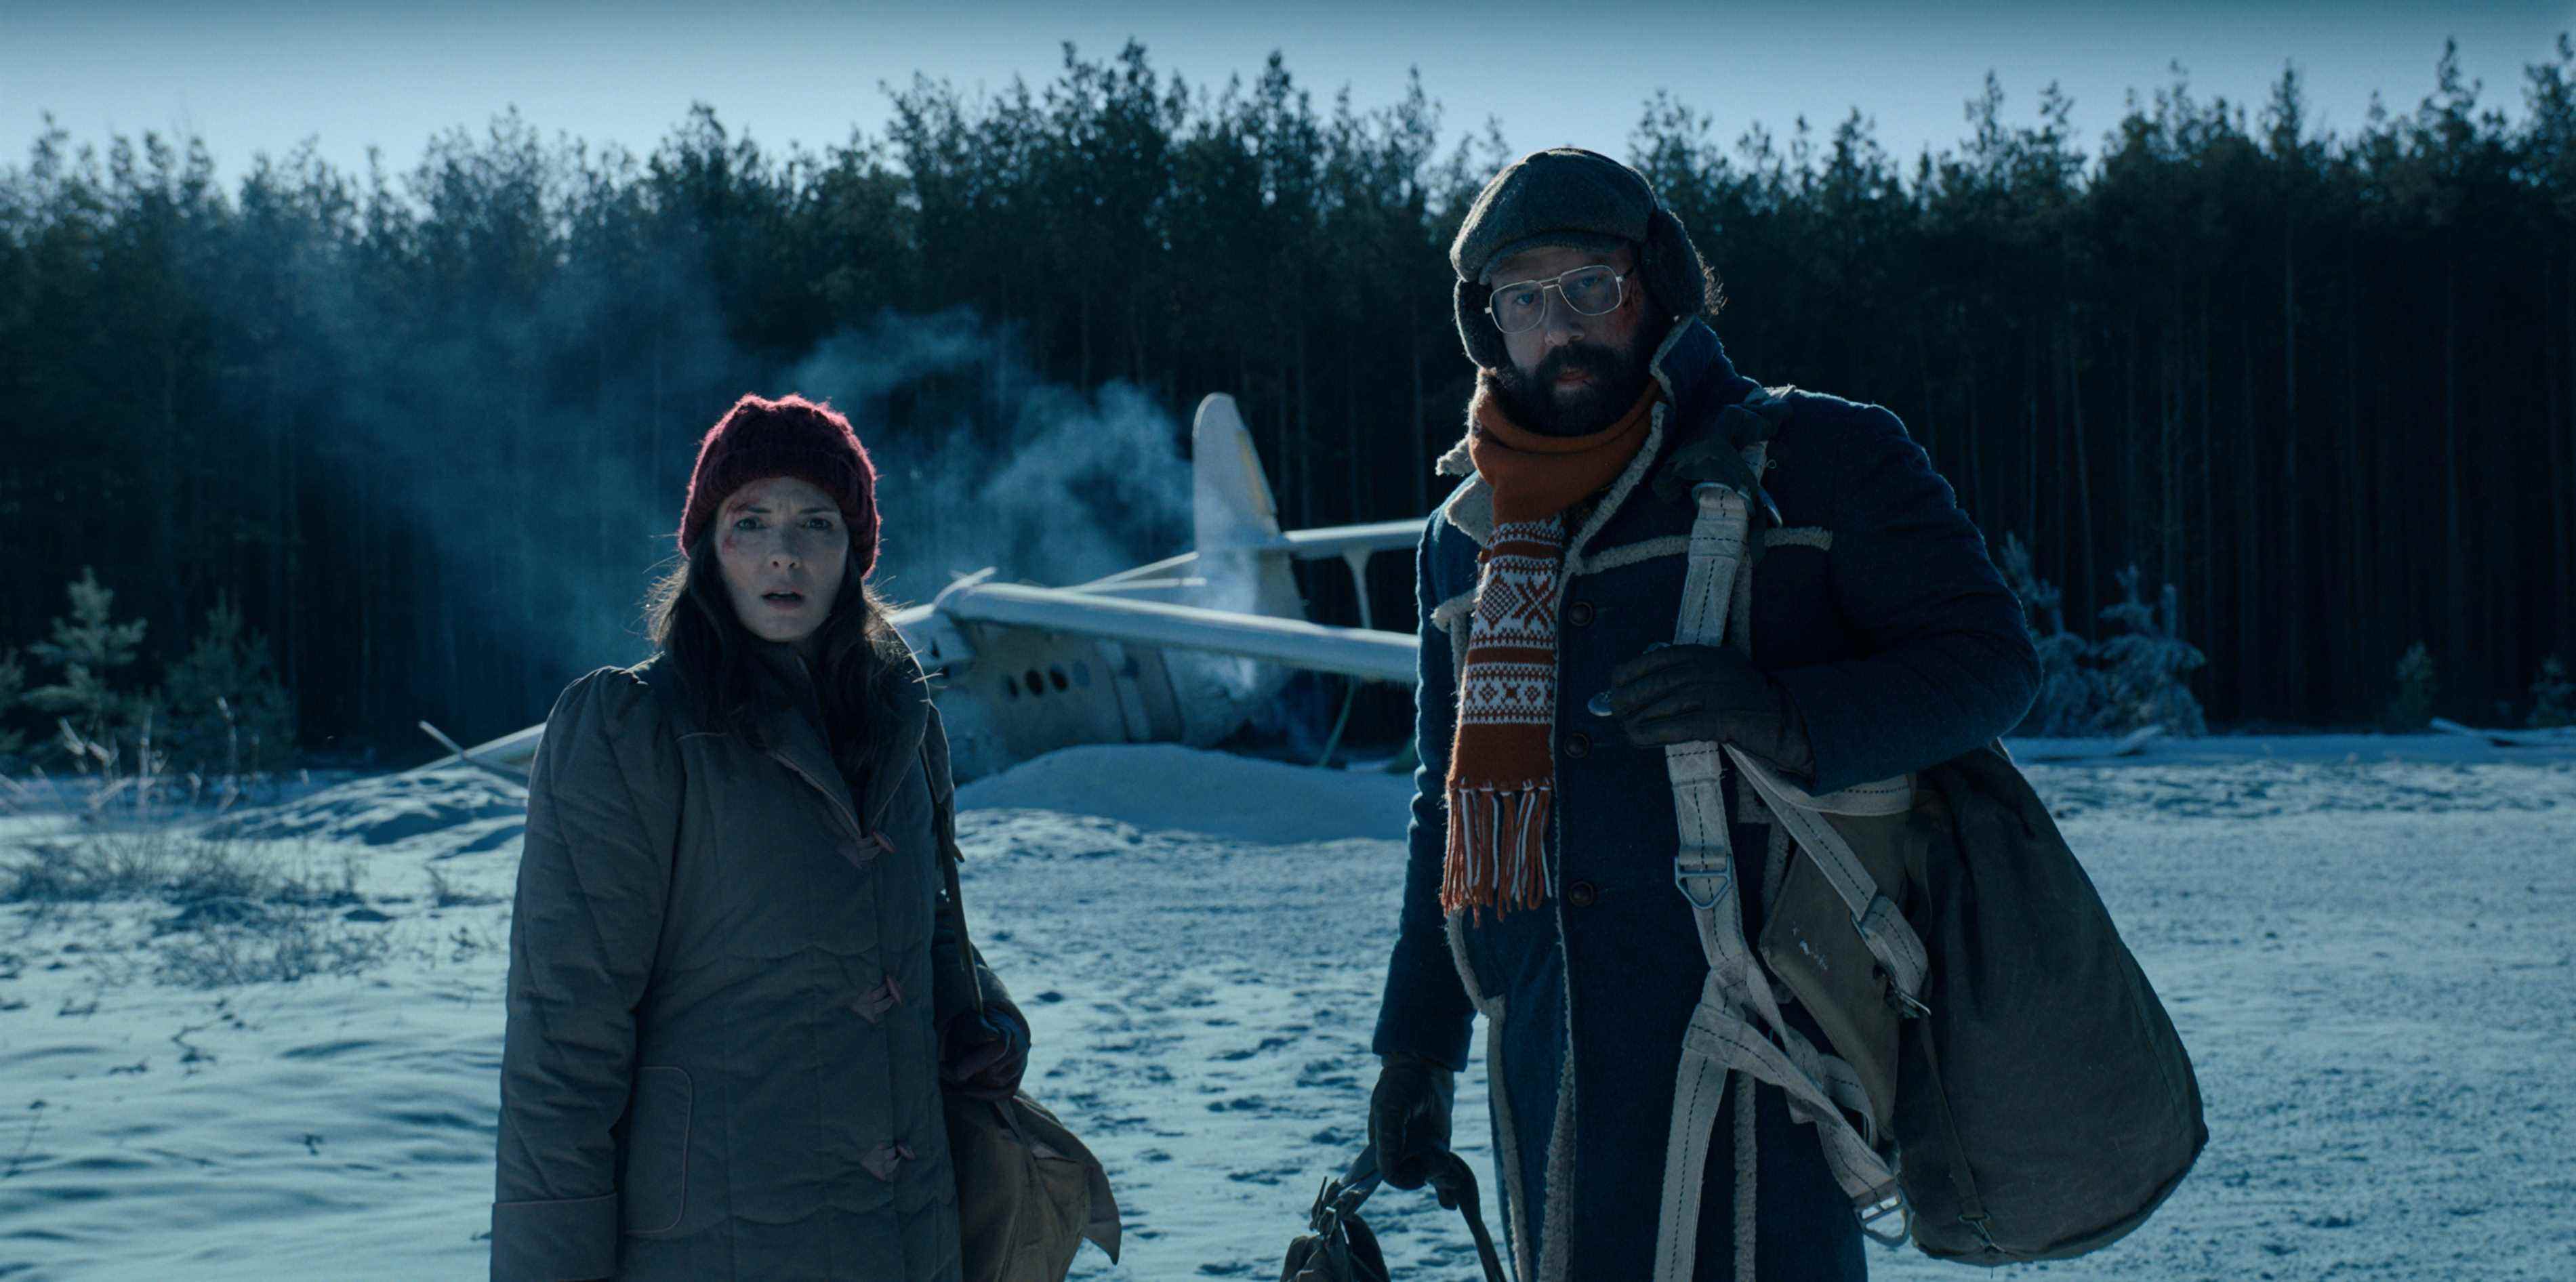 Joyce (Winona Ryder) et Murray (Brett Gelman) à l'extérieur d'un avion écrasé dans une scène enneigée dans une image officielle de la saison 4 de Stranger Things